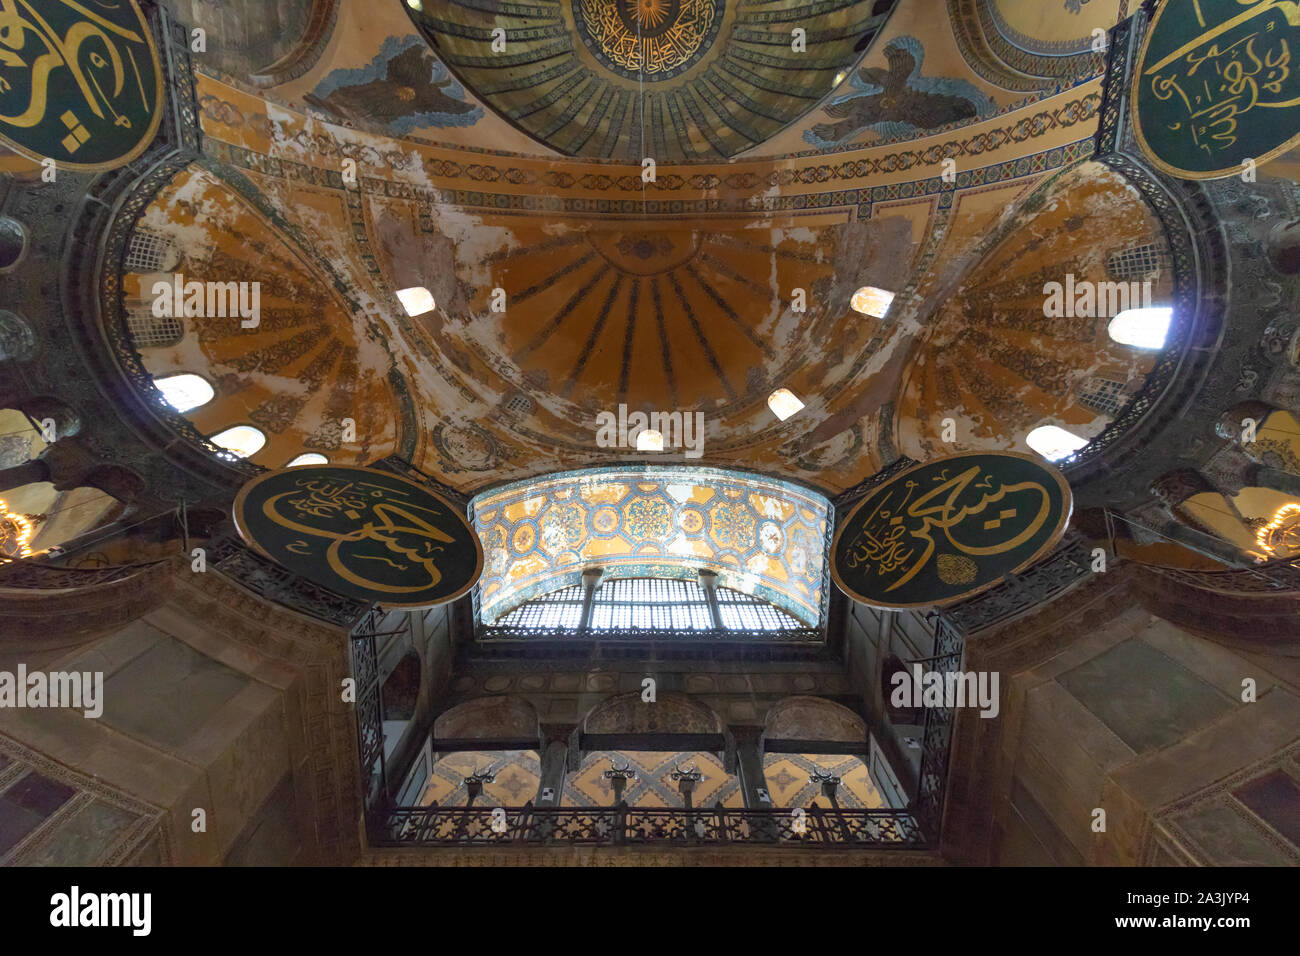 Interior of Hagia Sophia in Istanbul Stock Photo